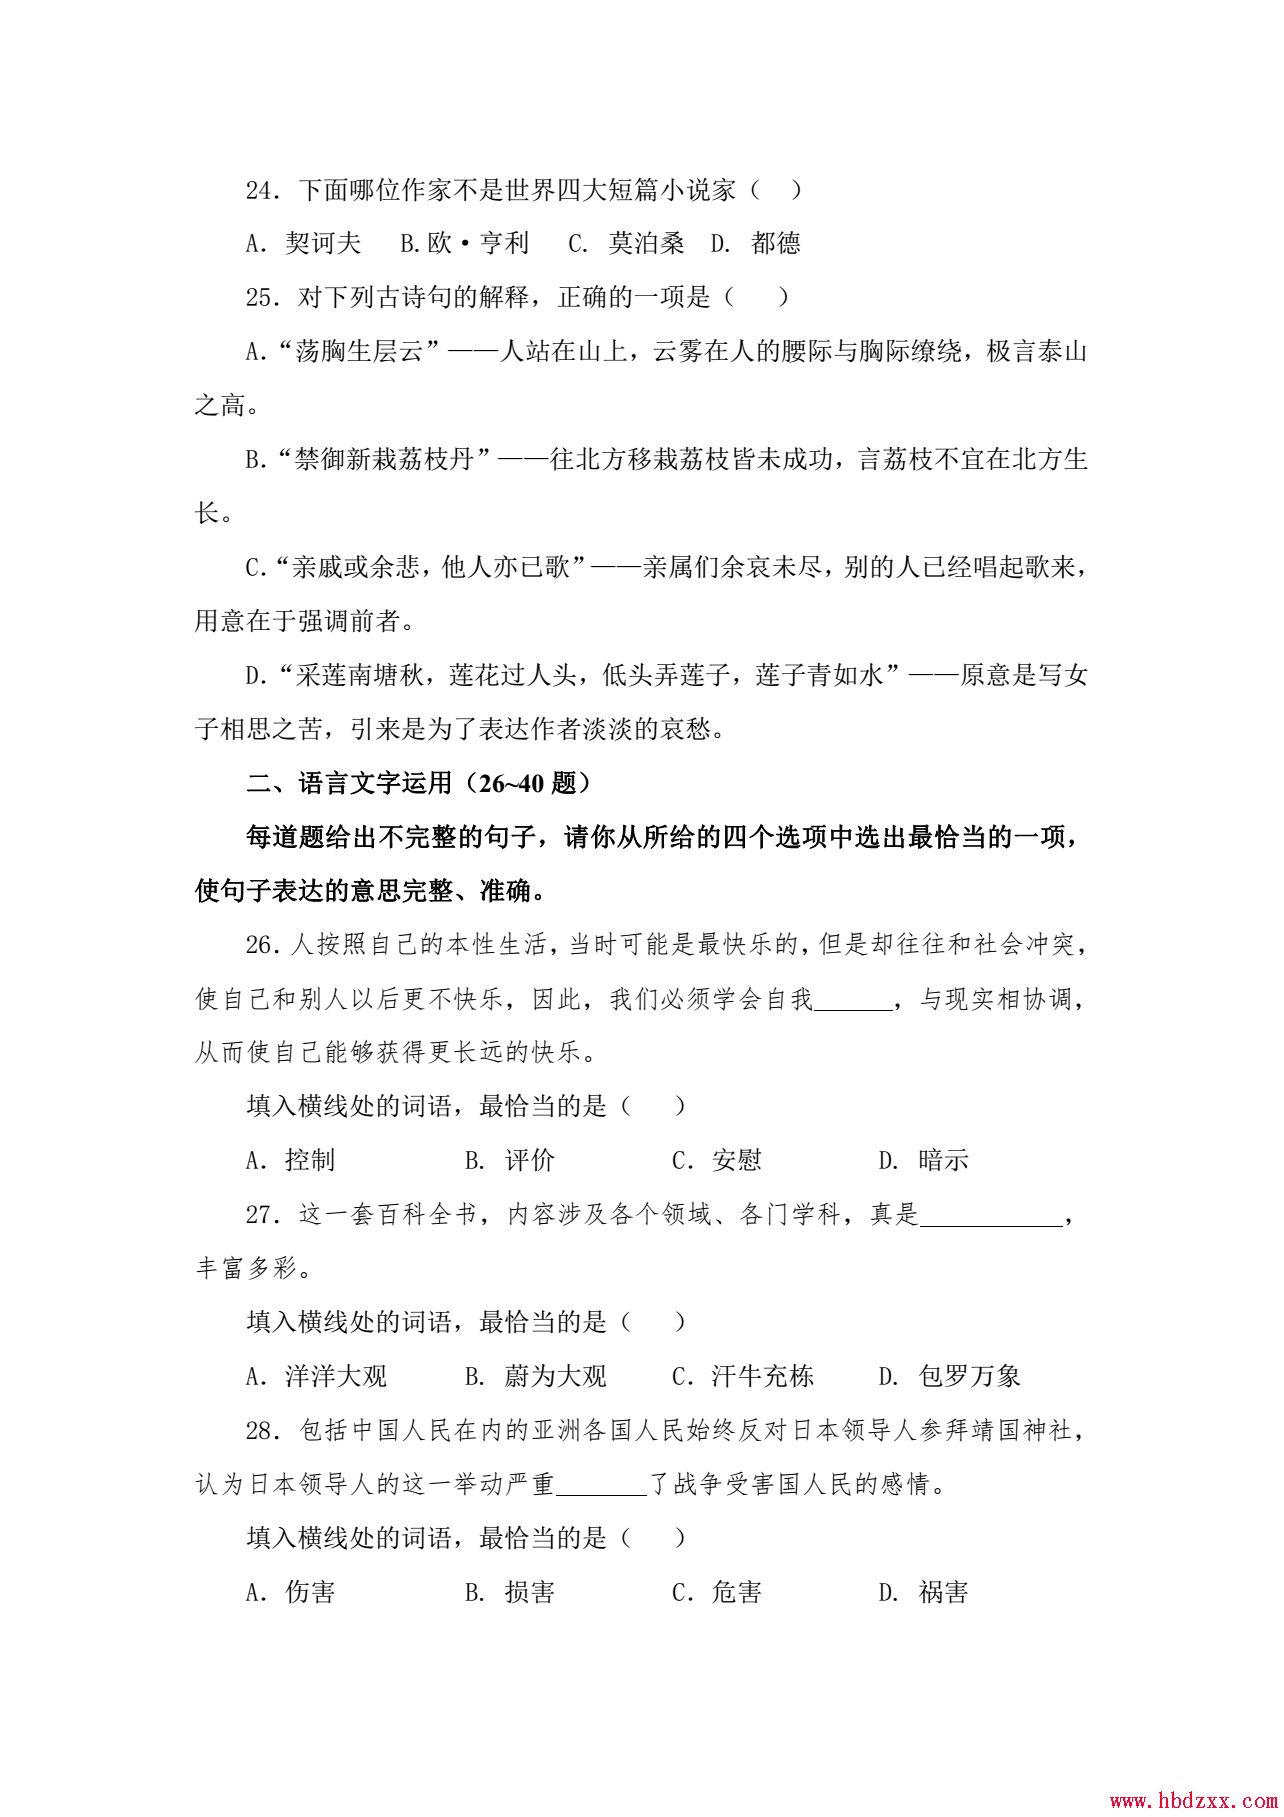 河北App职业技术学院2013年语文单招试题 图2